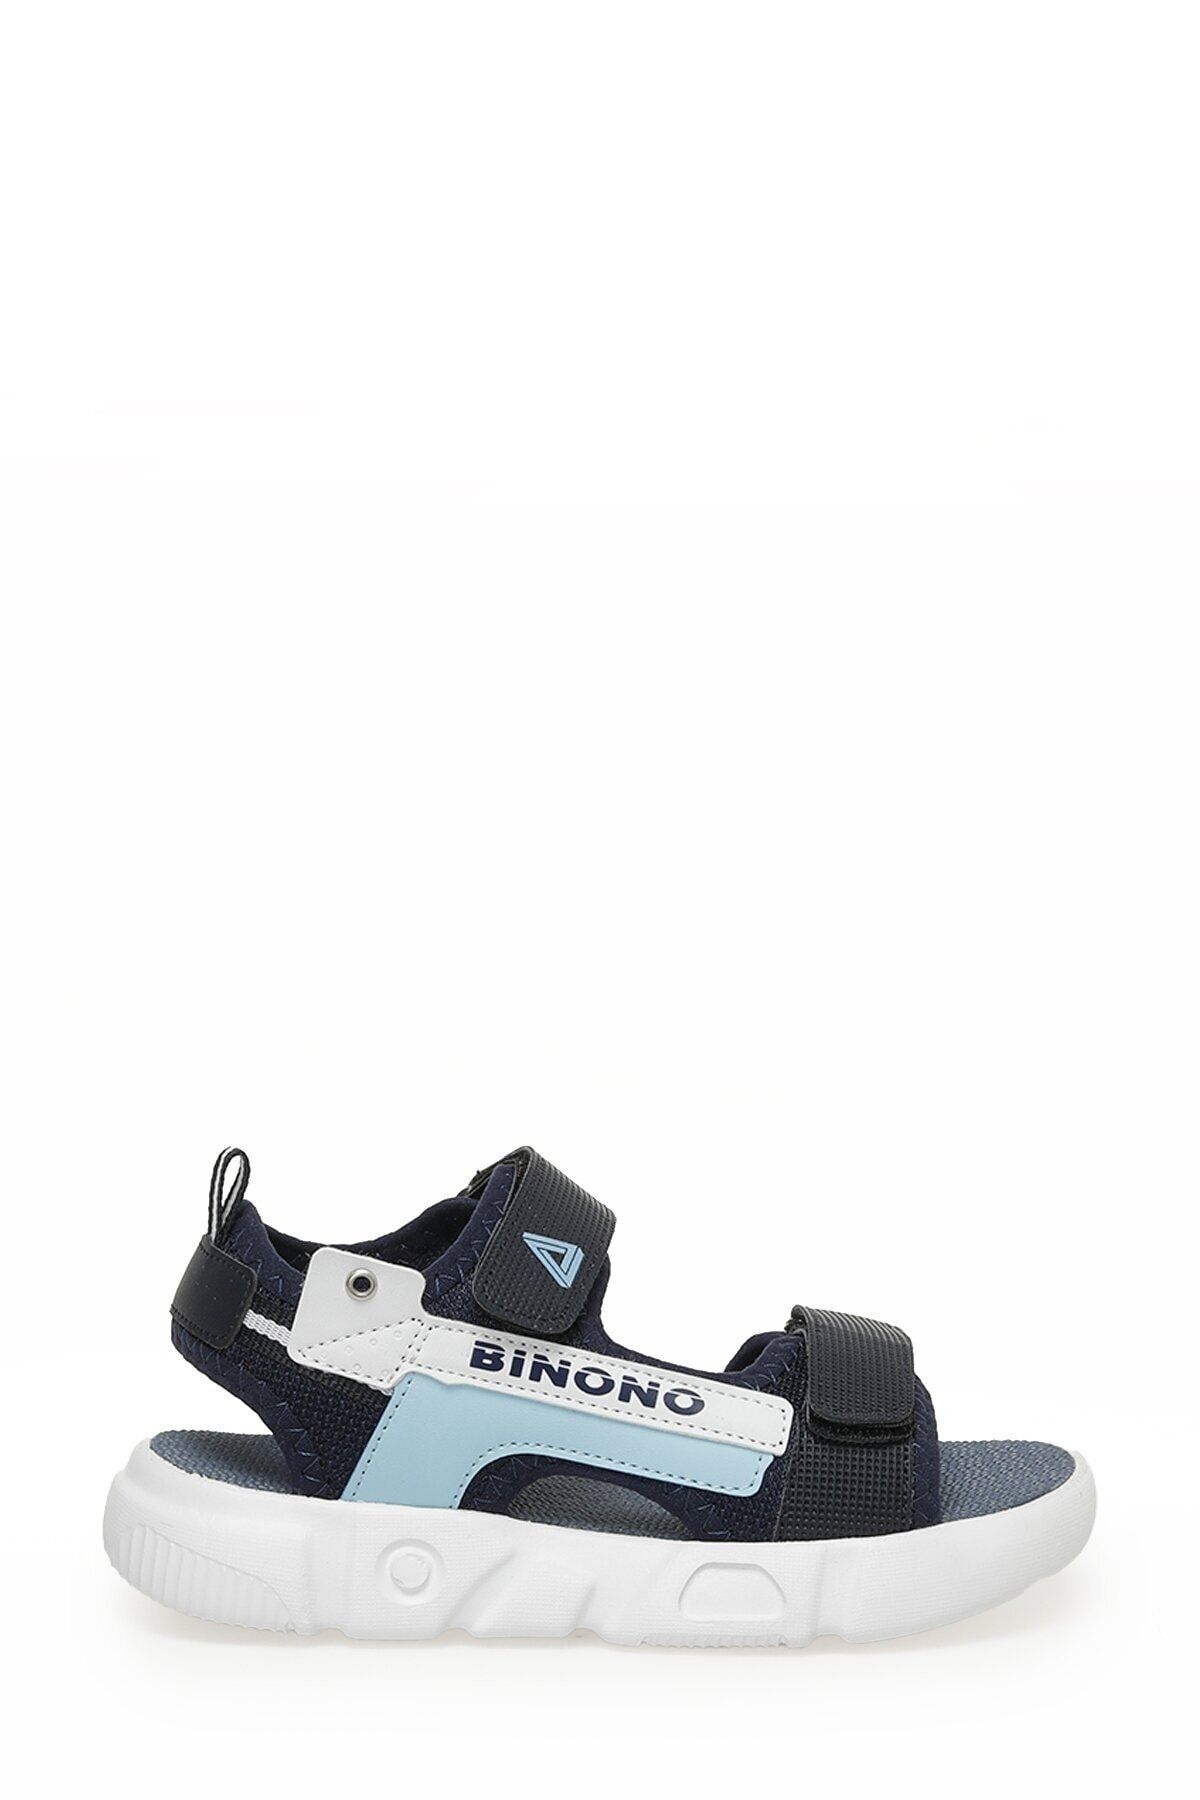 Binono YOKO F 3FX Lacivert Erkek Çocuk Sandalet